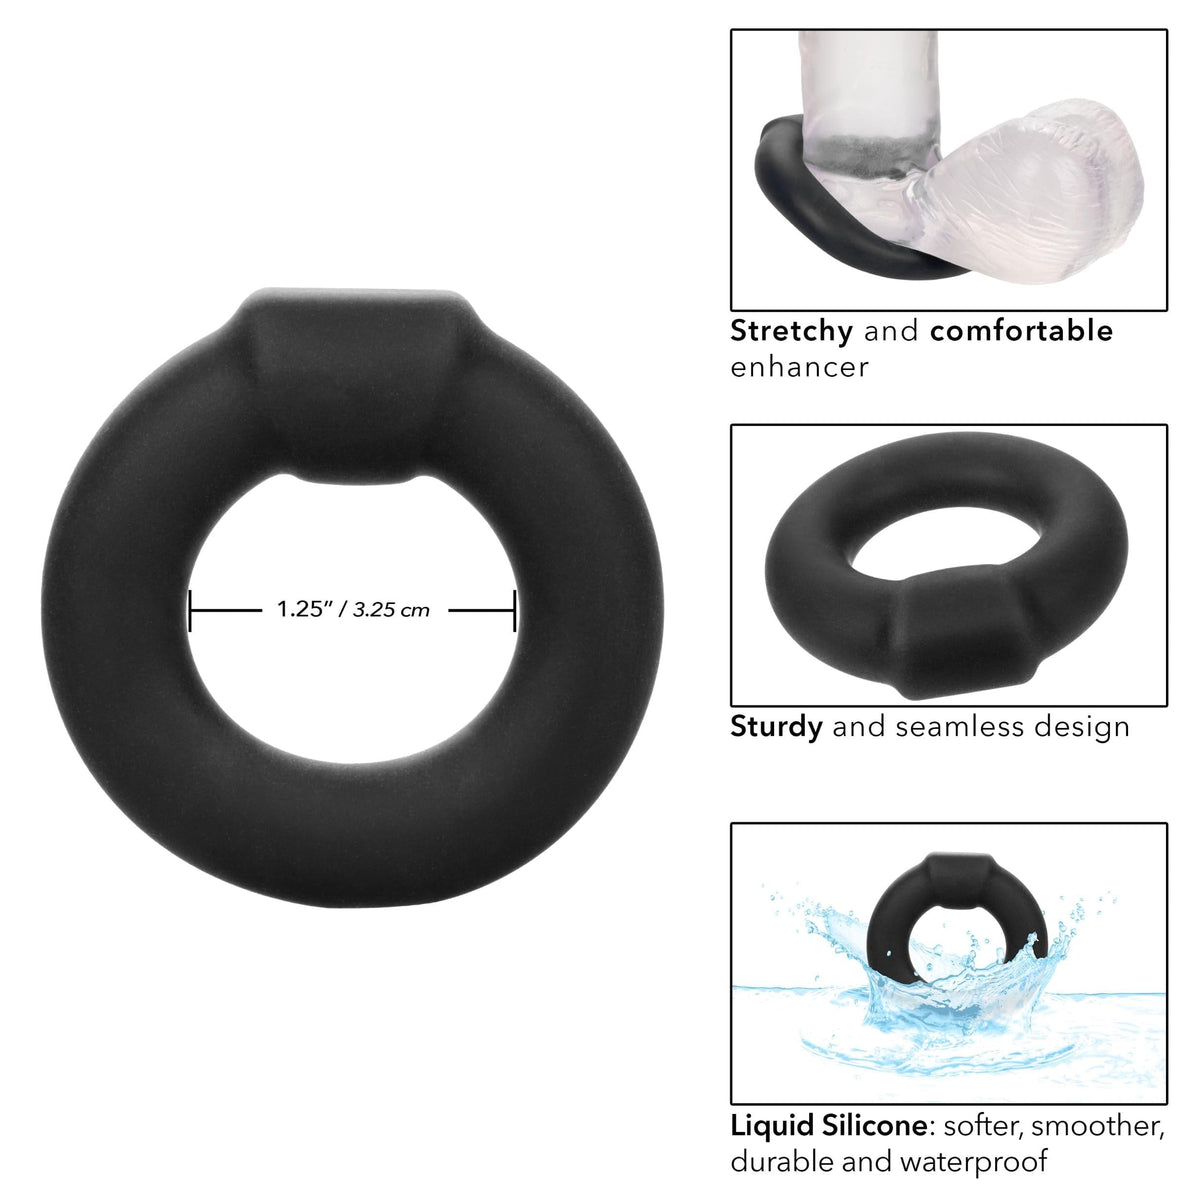 alpha liquid silicone optimum ring black